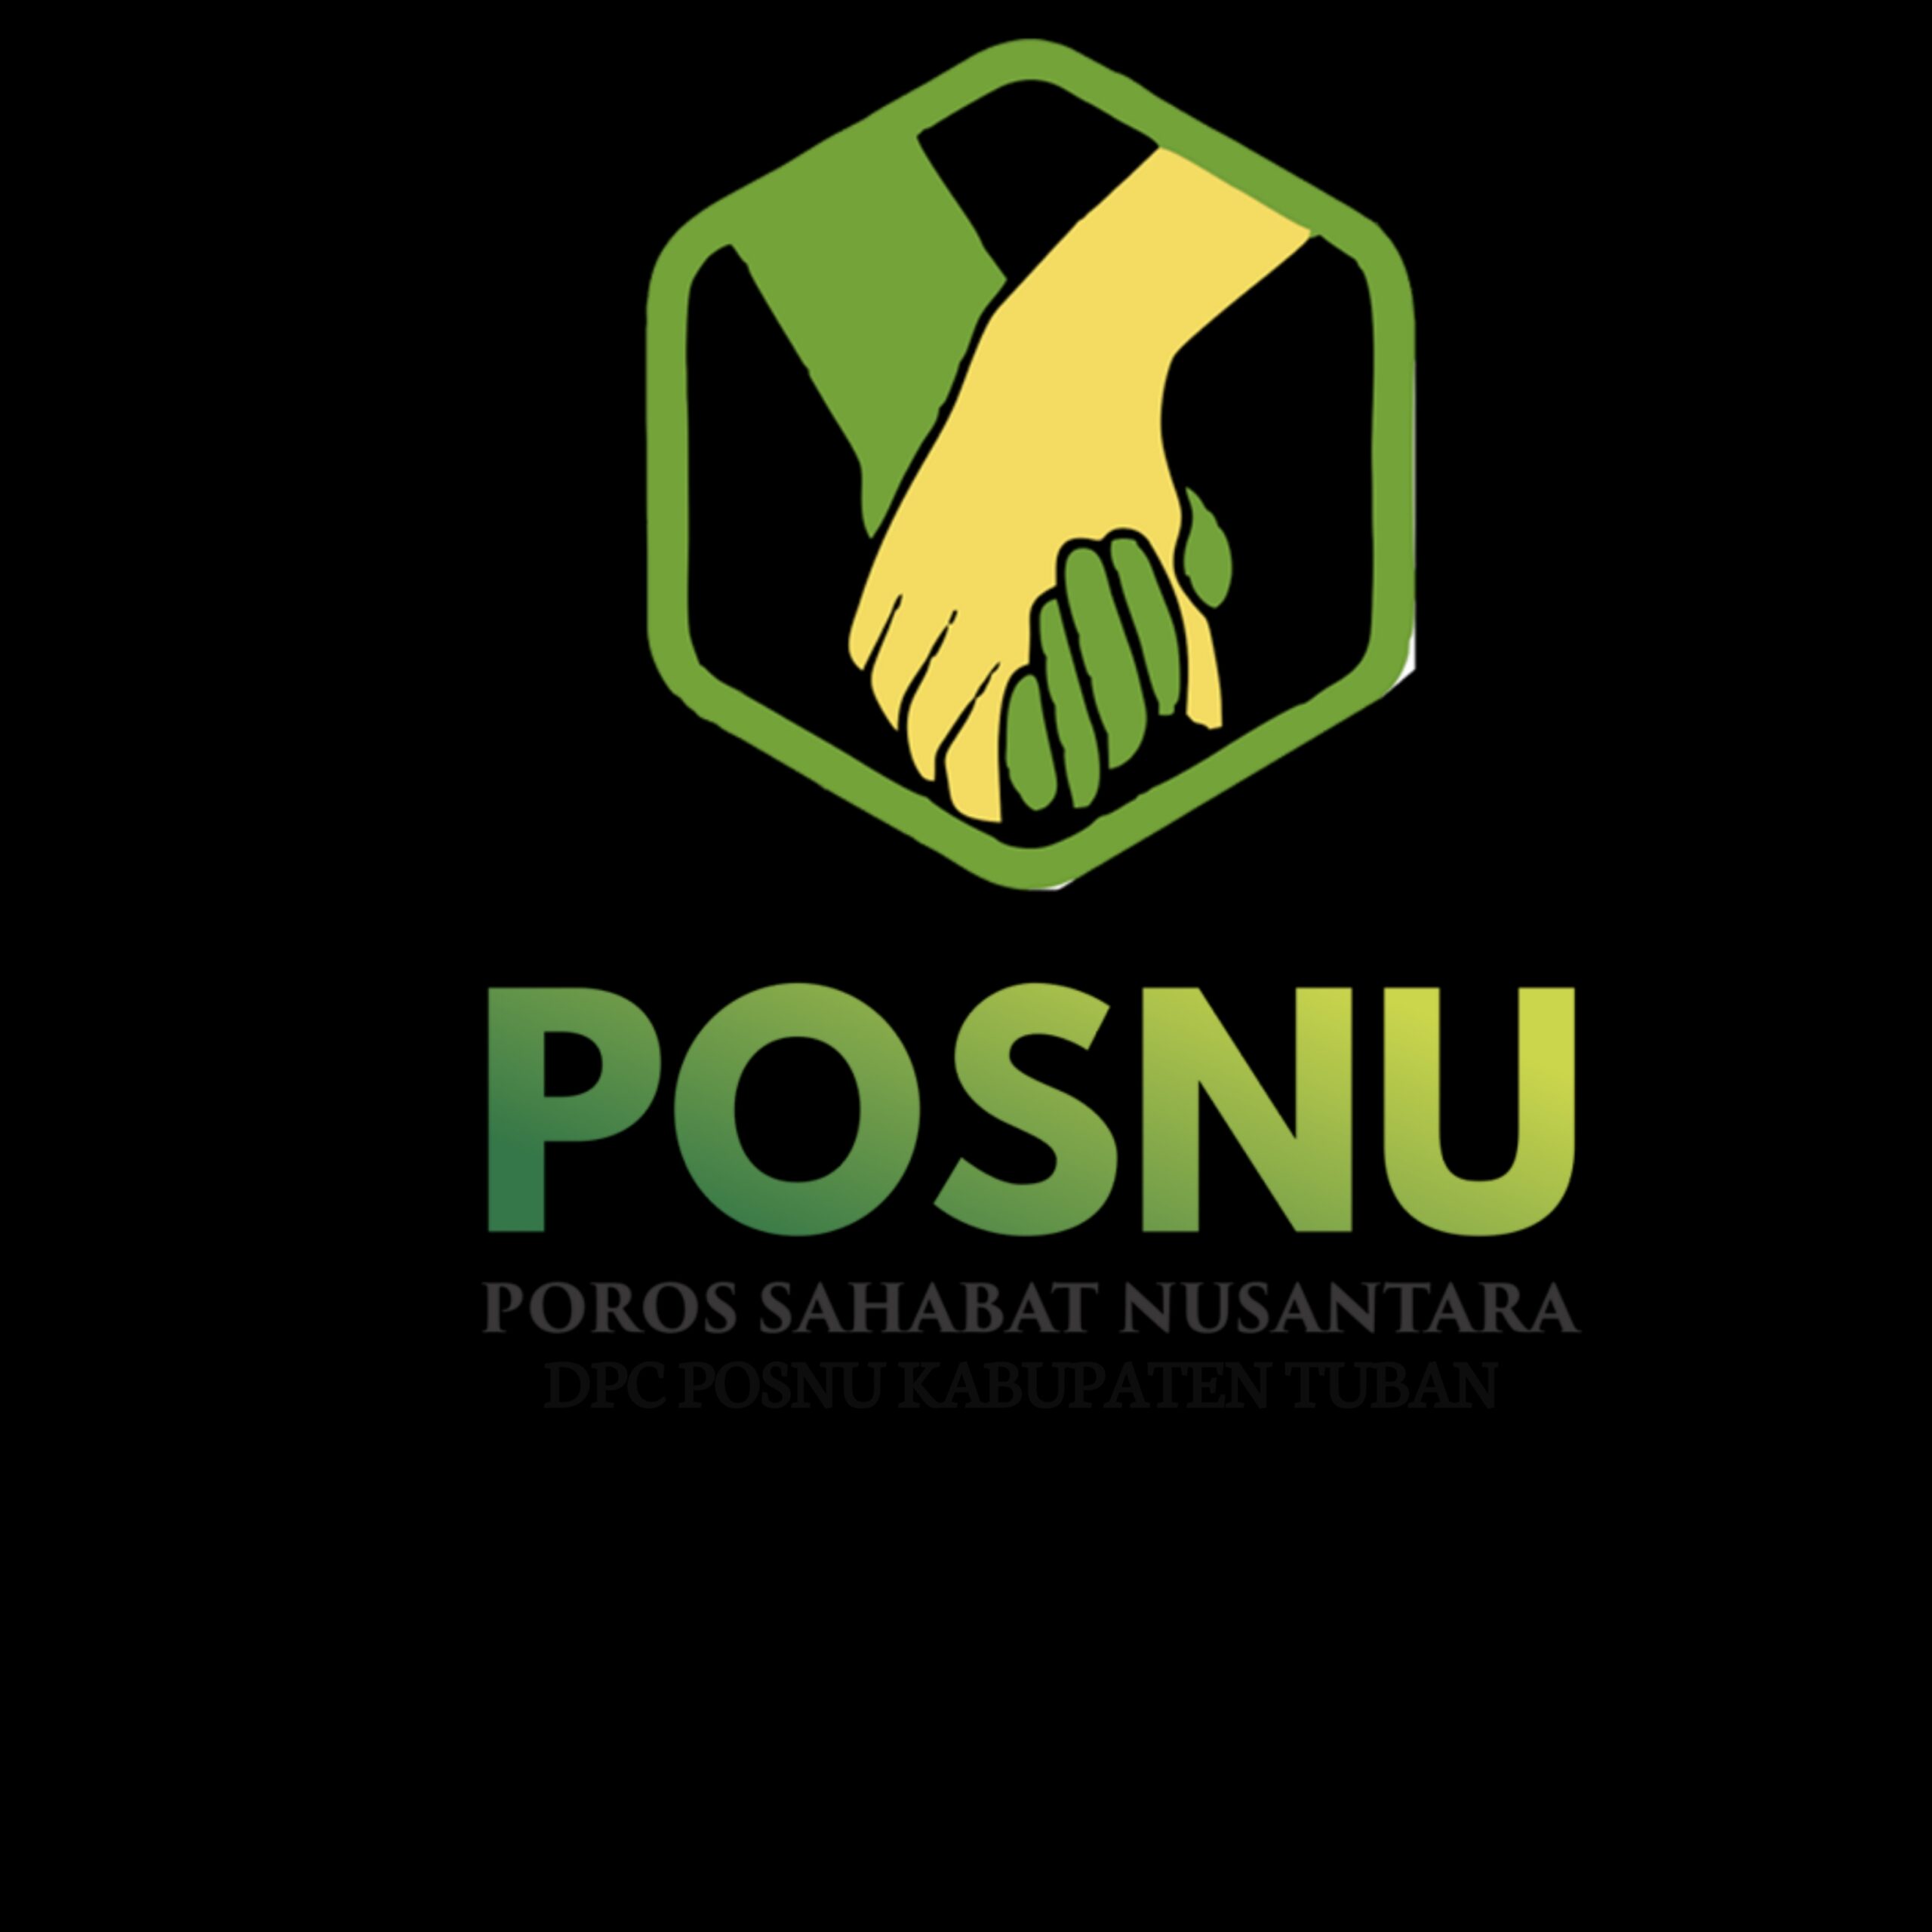 DPC Posnu Tuban, Demokrasi Telah Dicederai Oleh Penyelnggara Pemilu Sehingga Ada Indikasi Kerjasama Sampai Penggelembungan Suara.